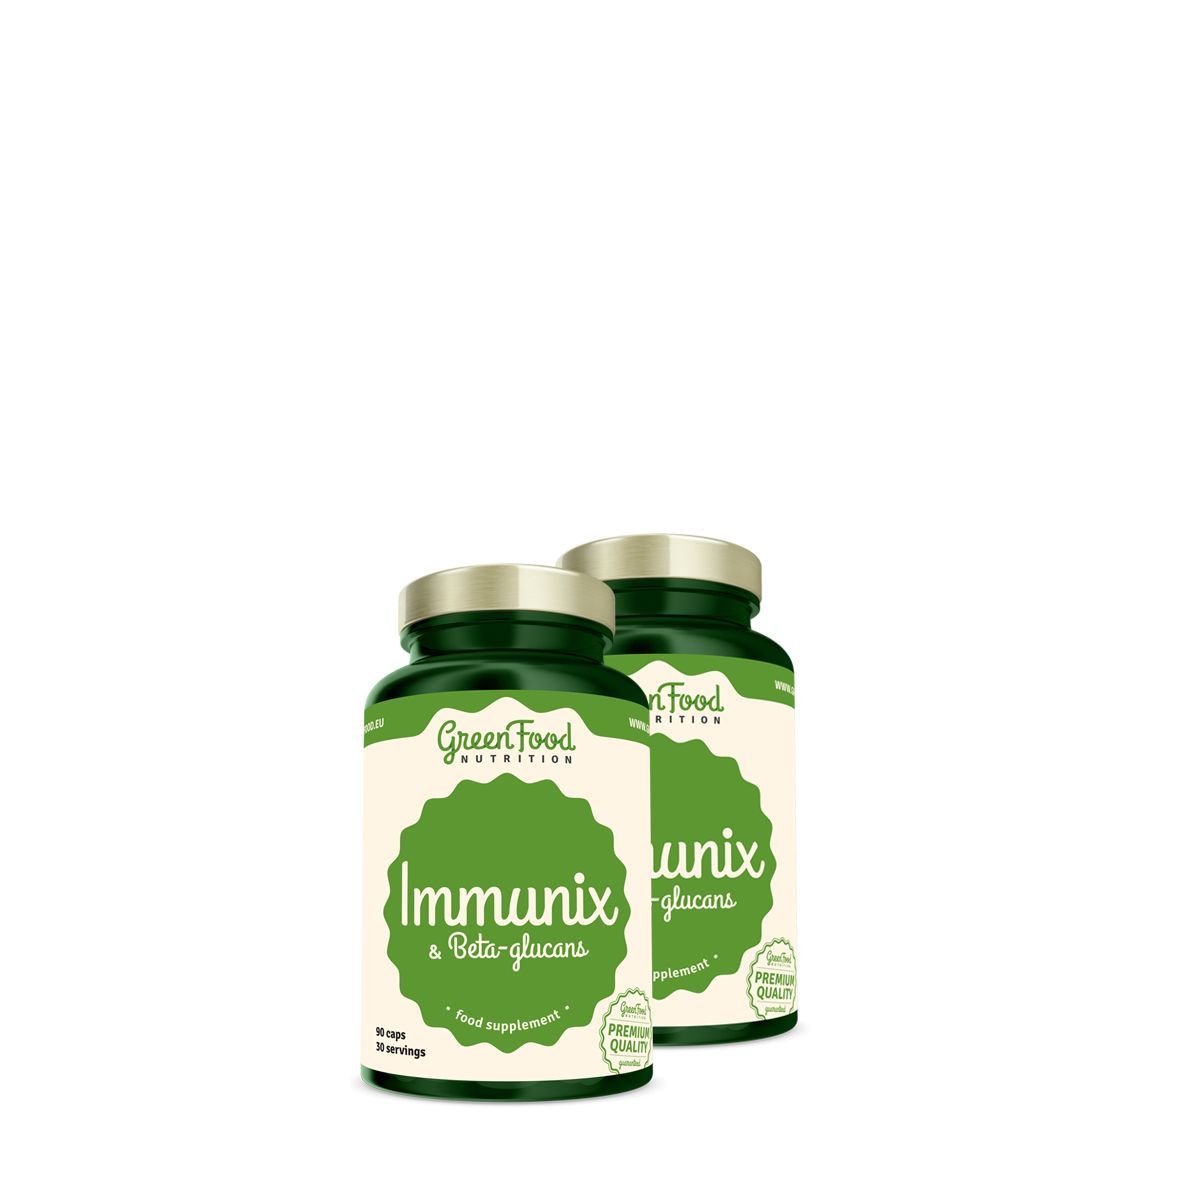 Immunerősítő béta-glükánnal, GreenFood Nutrition Immunix & Beta-Glucans, 2x90 kapszula